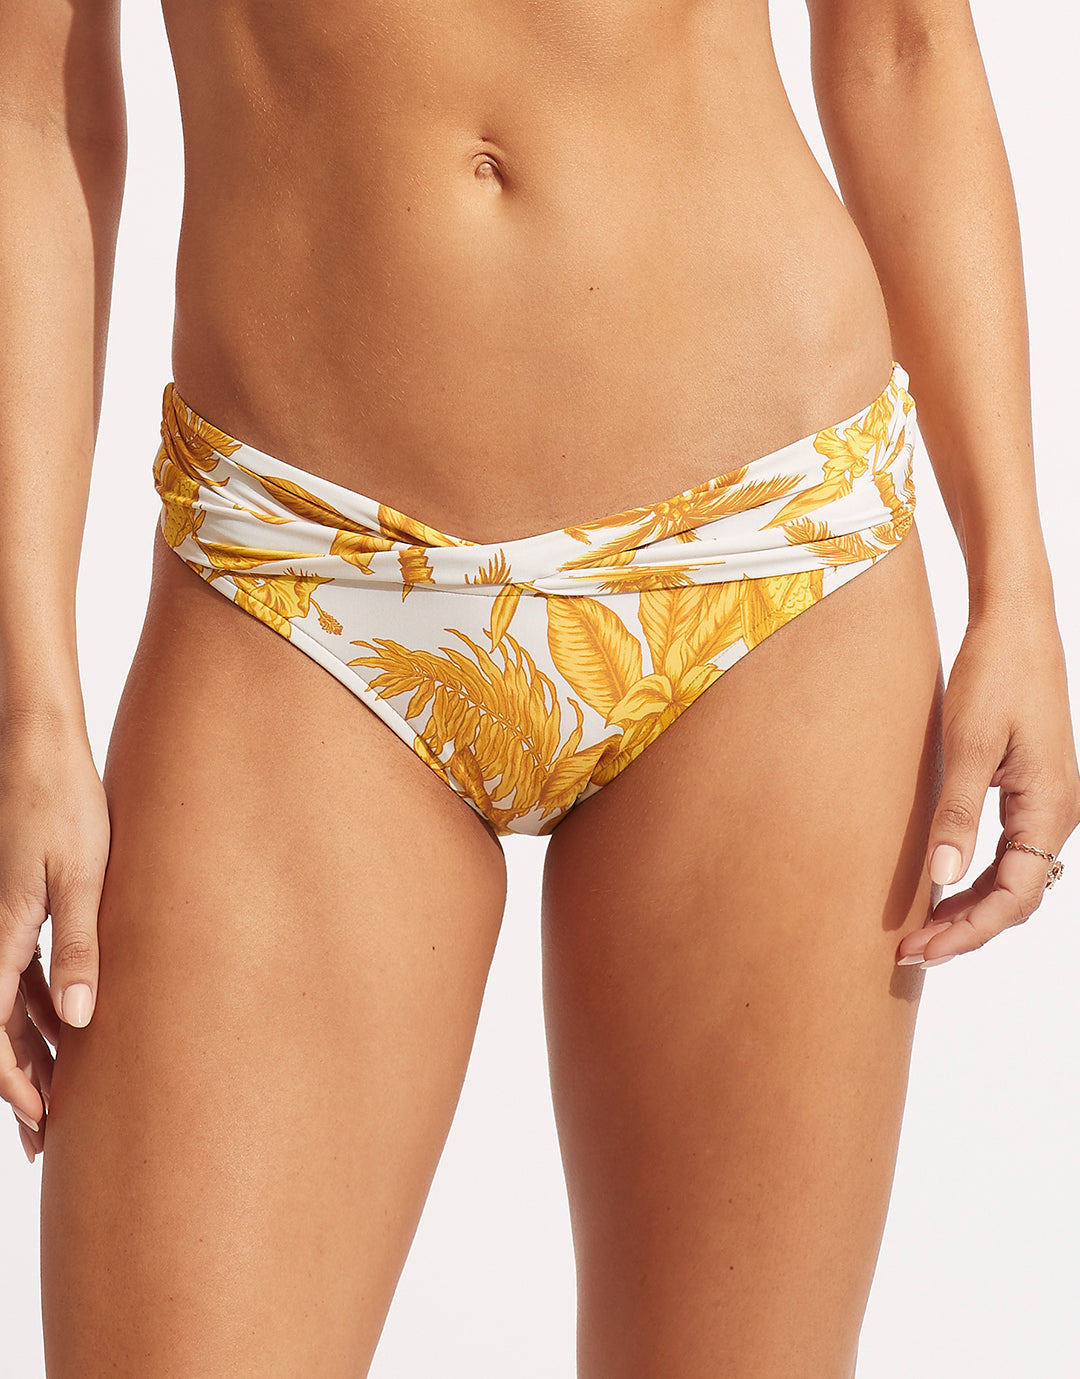 Sunsets Women's Printed Fold-over High-waist Bikini Bottom - 33p